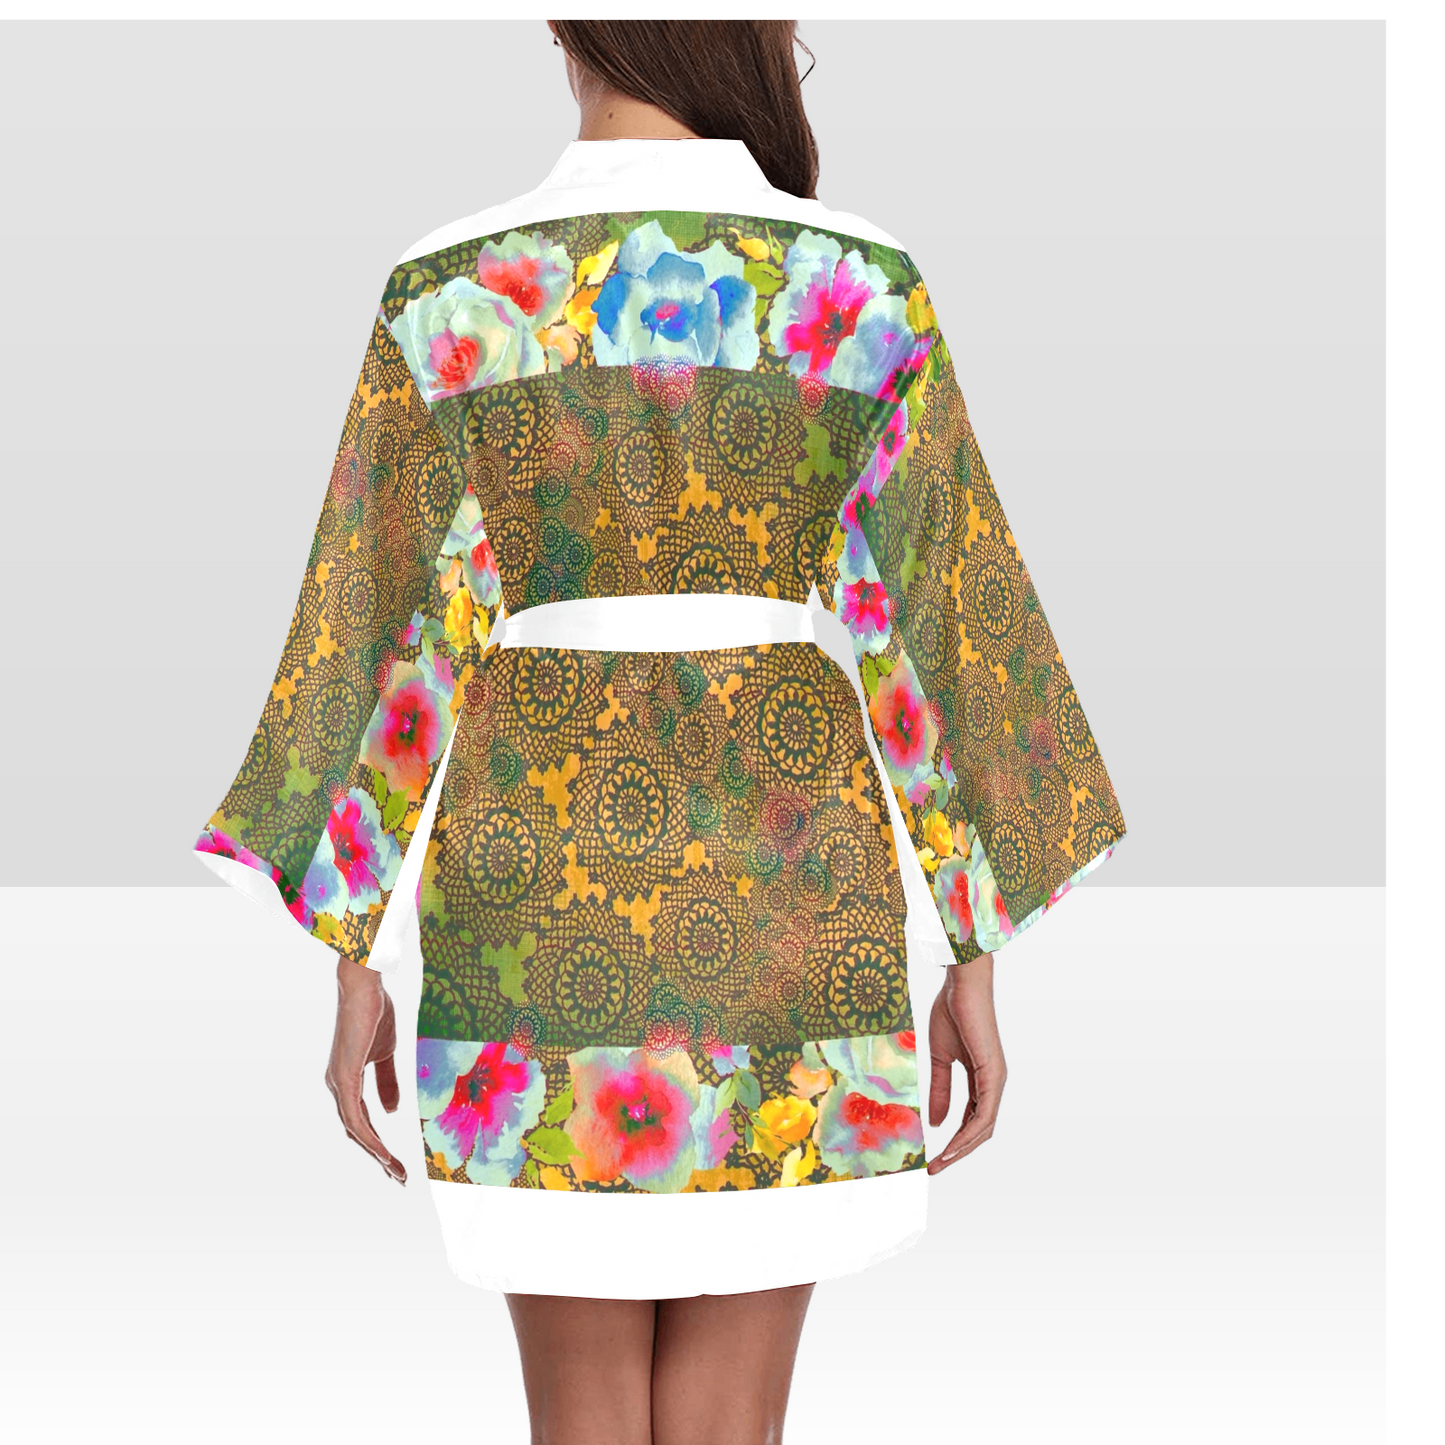 Victorian Lace Kimono Robe, Black or White Trim, Sizes XS to 2XL, Design 15